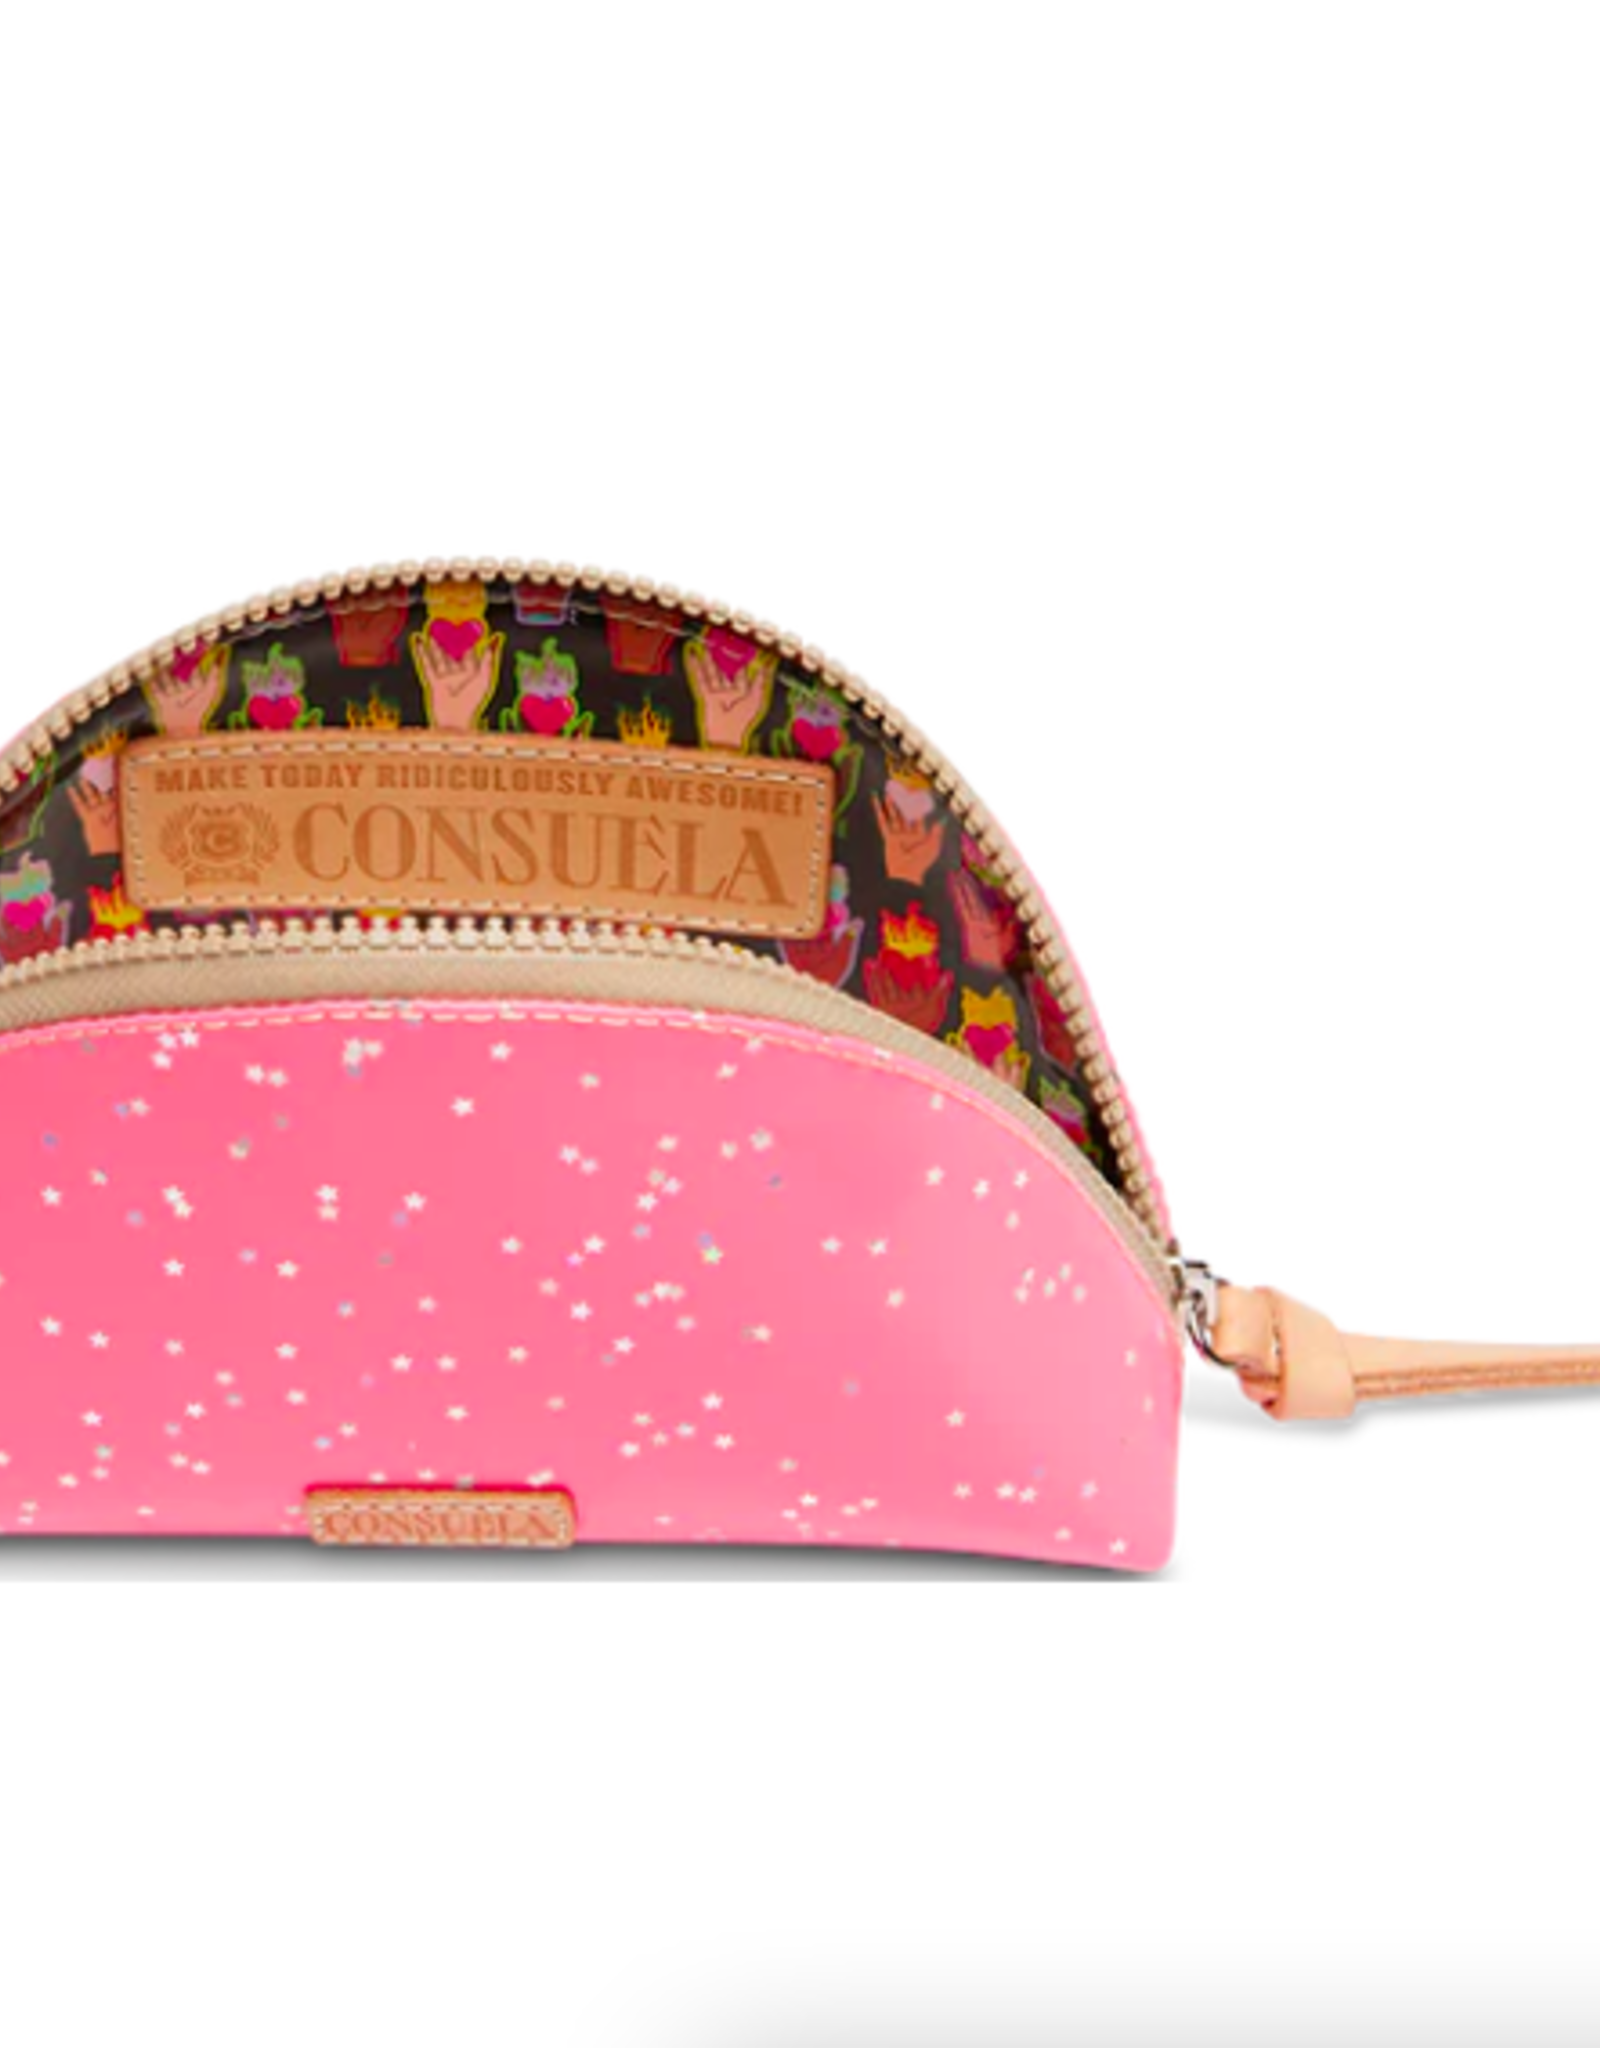 Consuela Consuela Medium Cosmetic Bag Shine